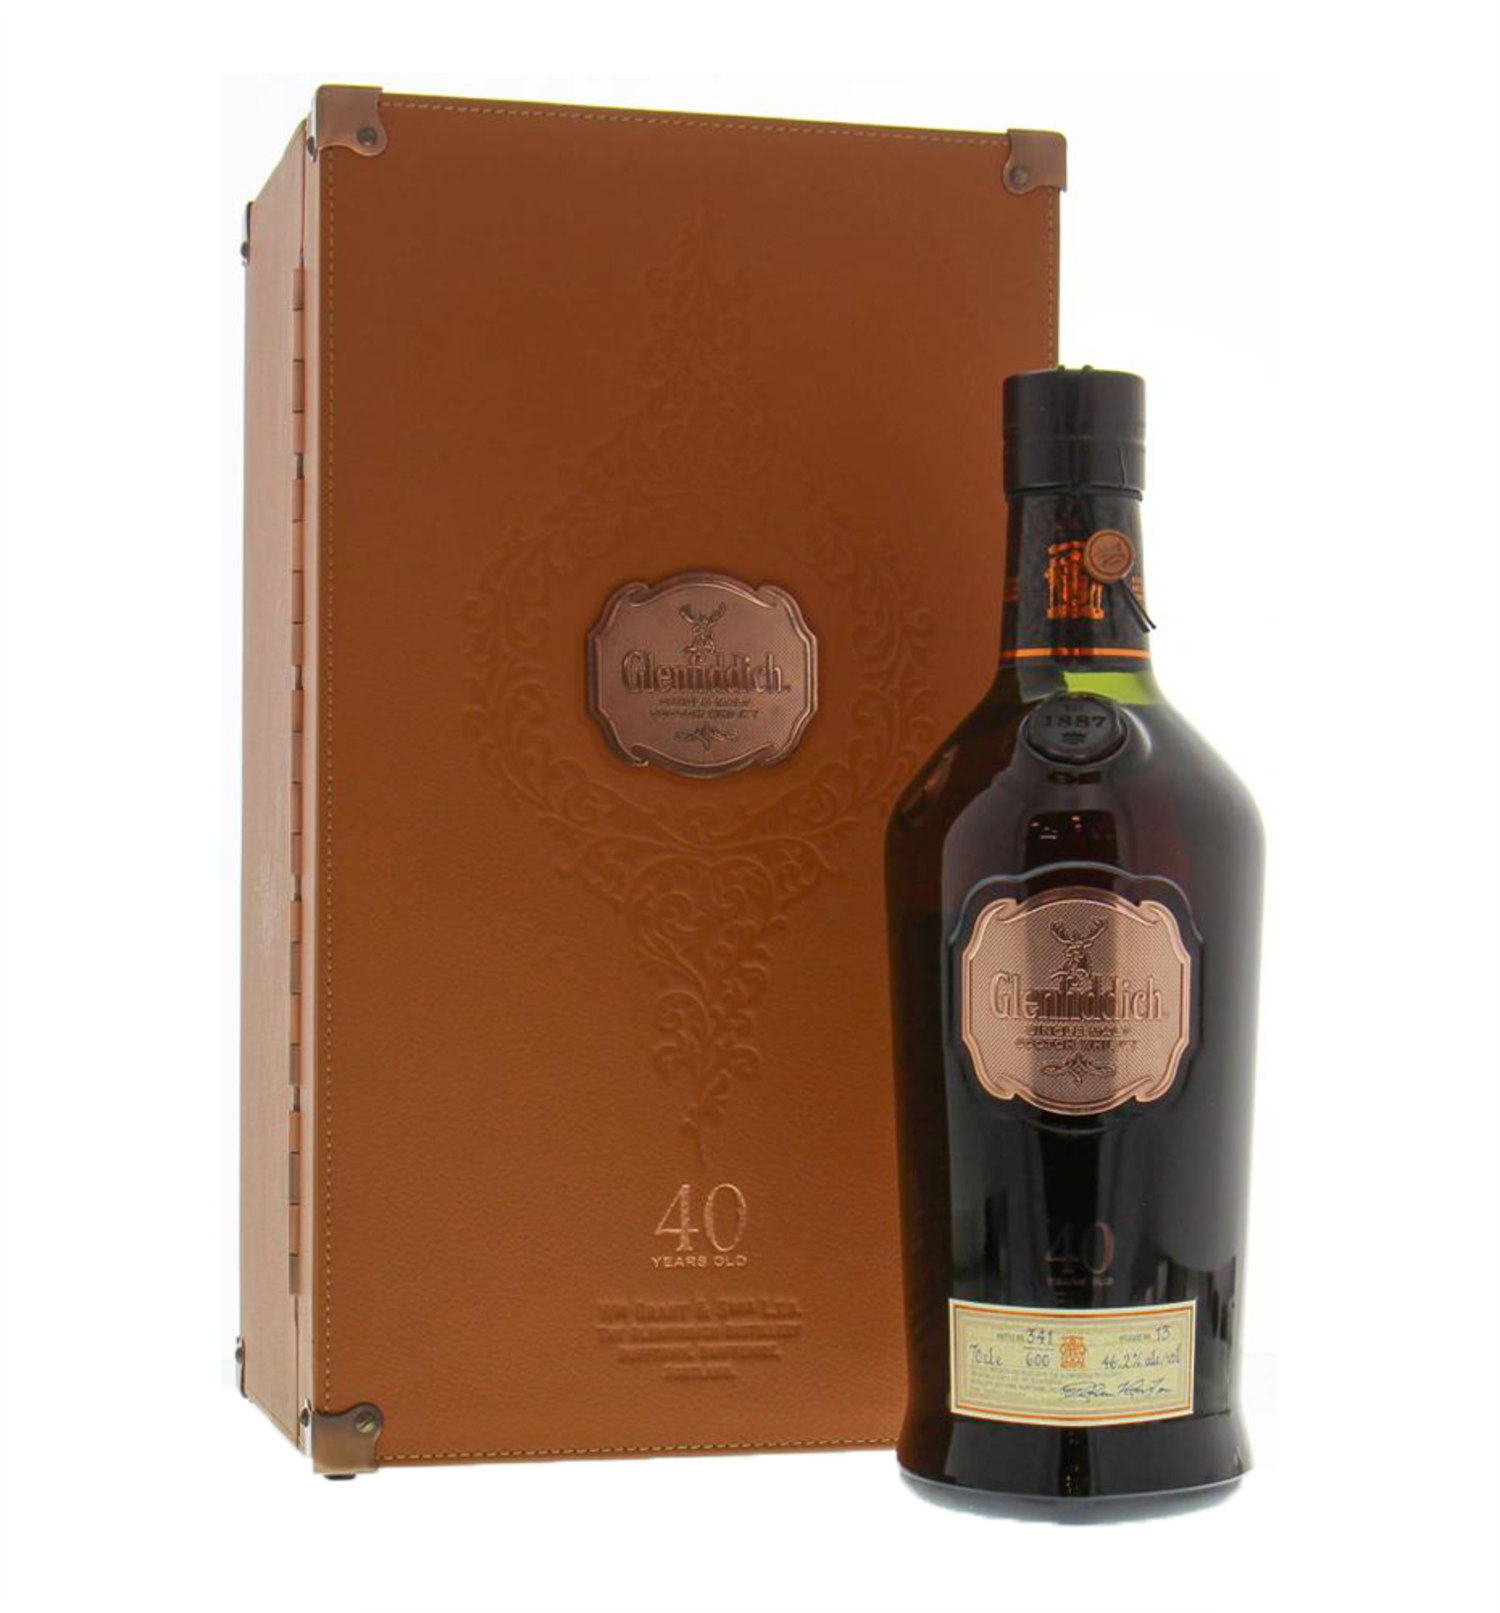 Glenfiddich 40Yr Single Malt Scotch Whisky 750ml $5599 FREE